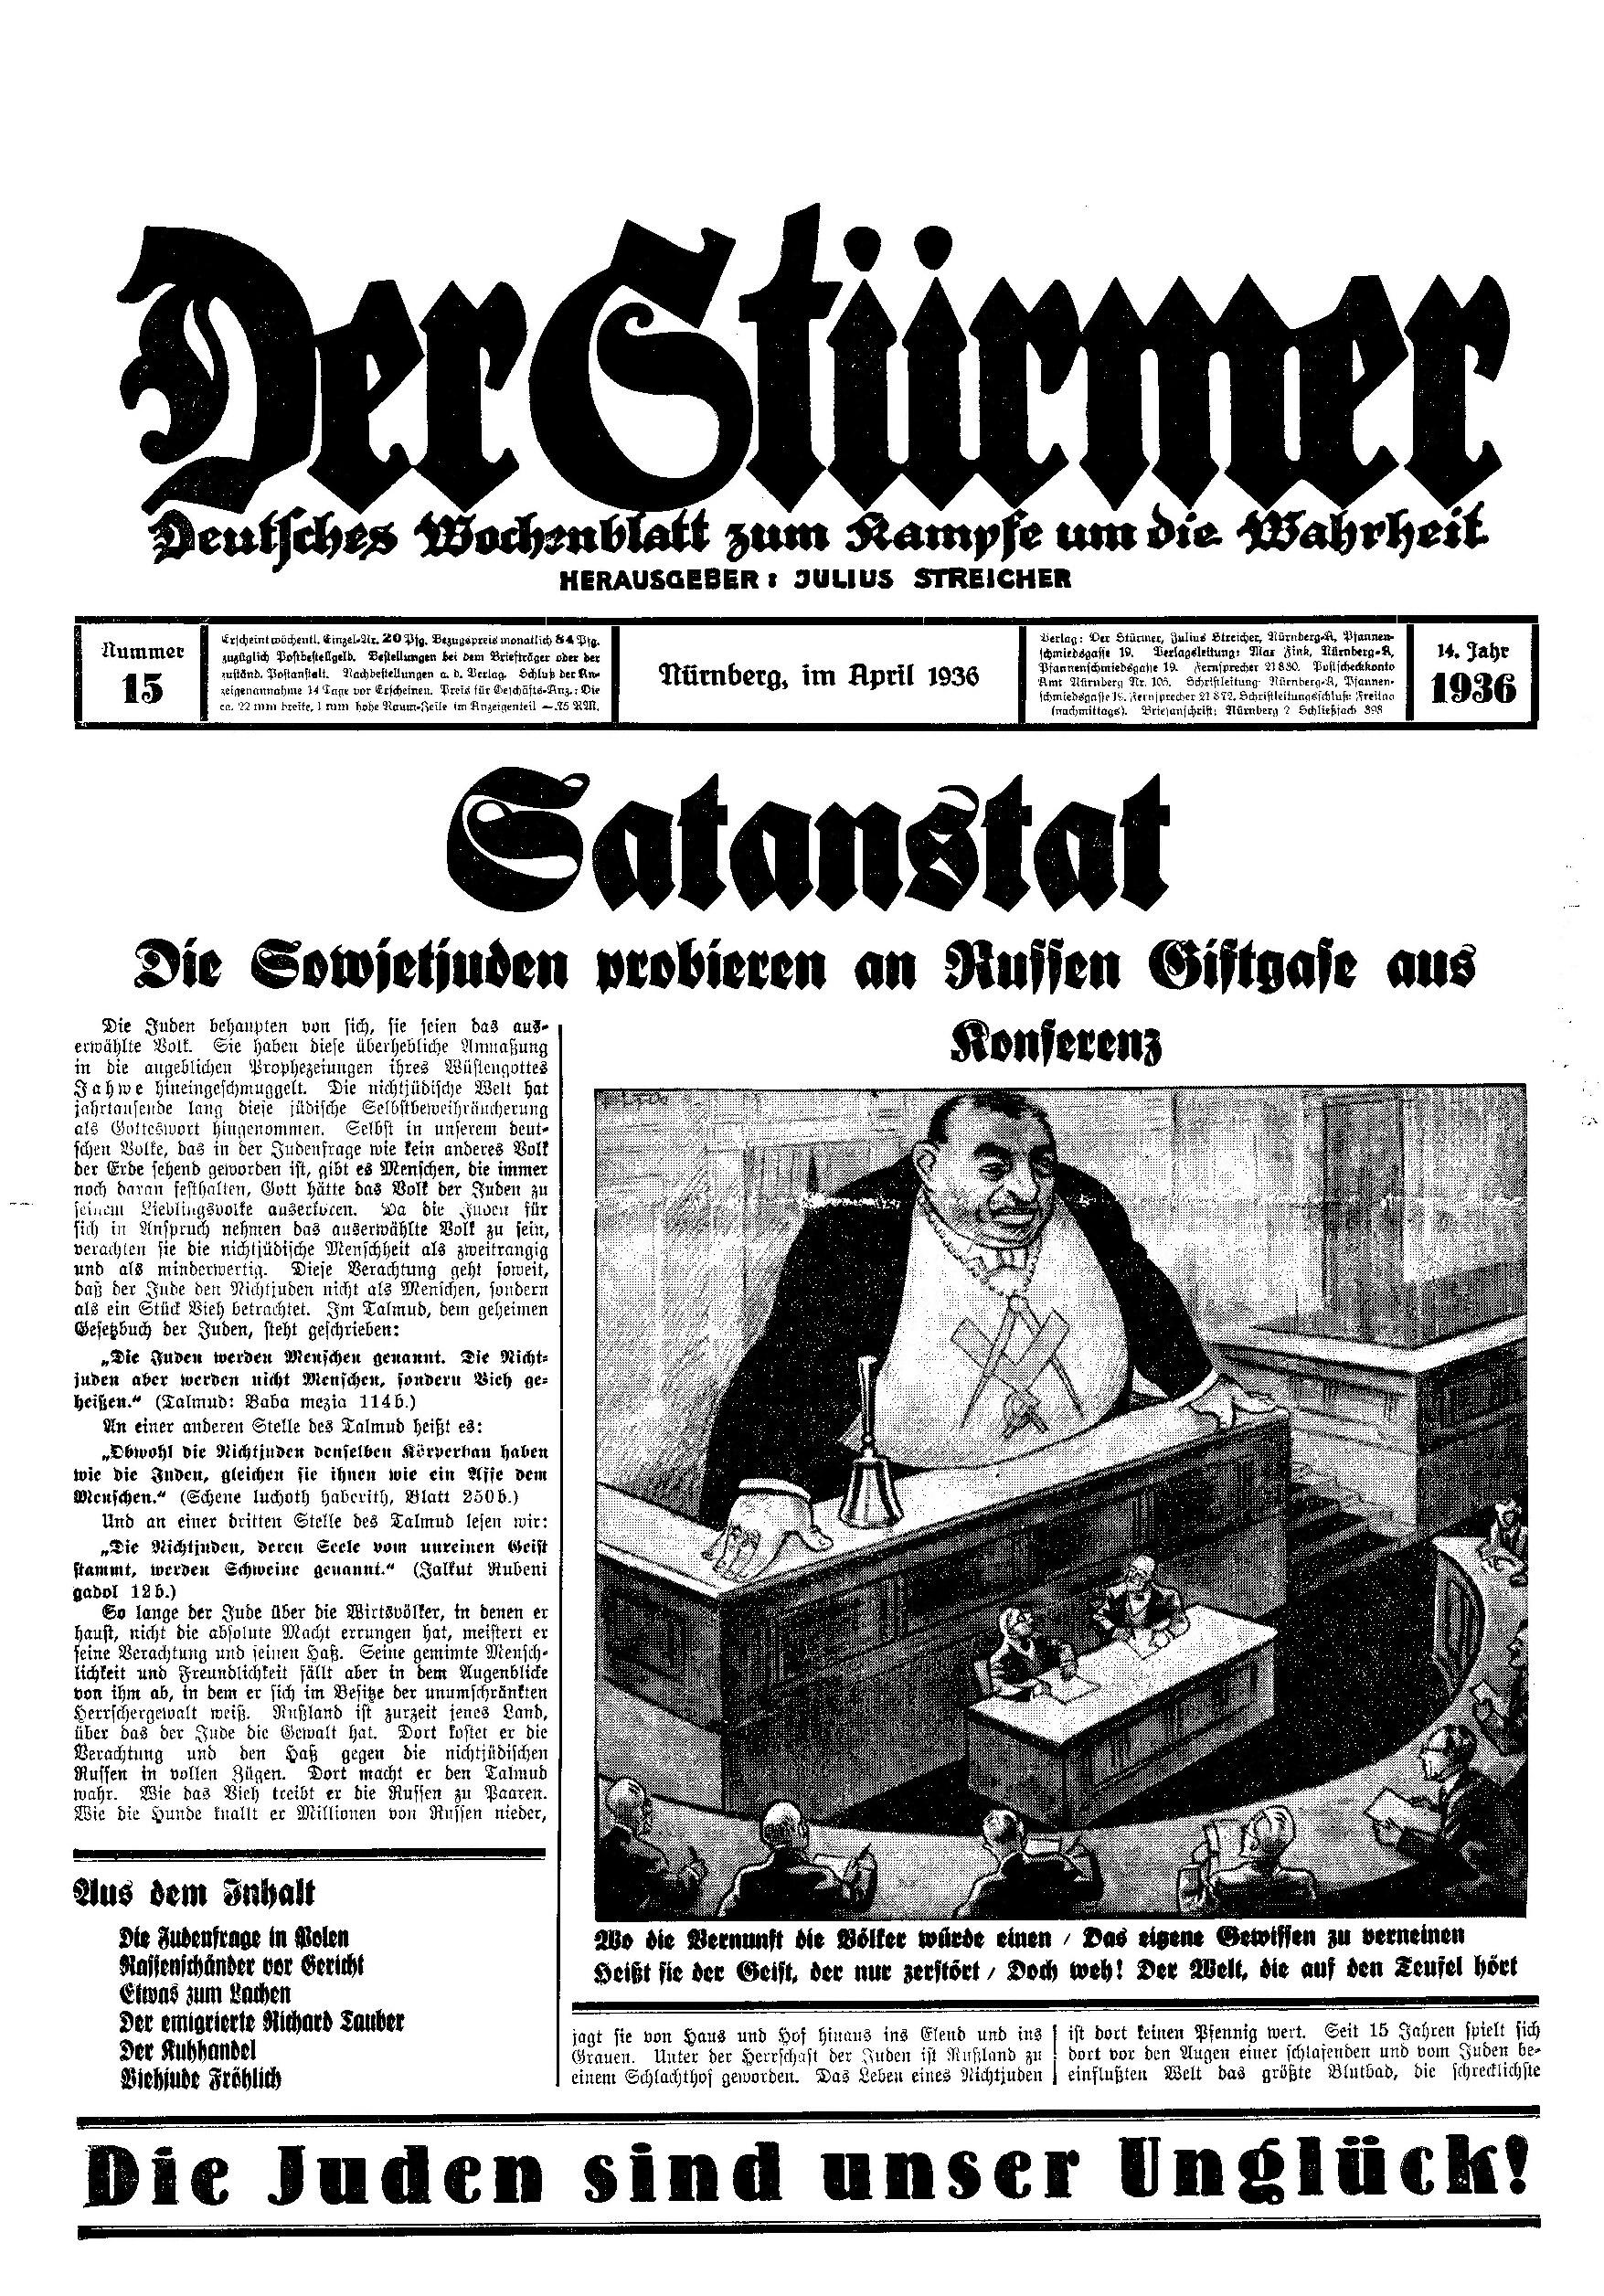 Der Stürmer - 1936 Nr. 15 - Satanstat